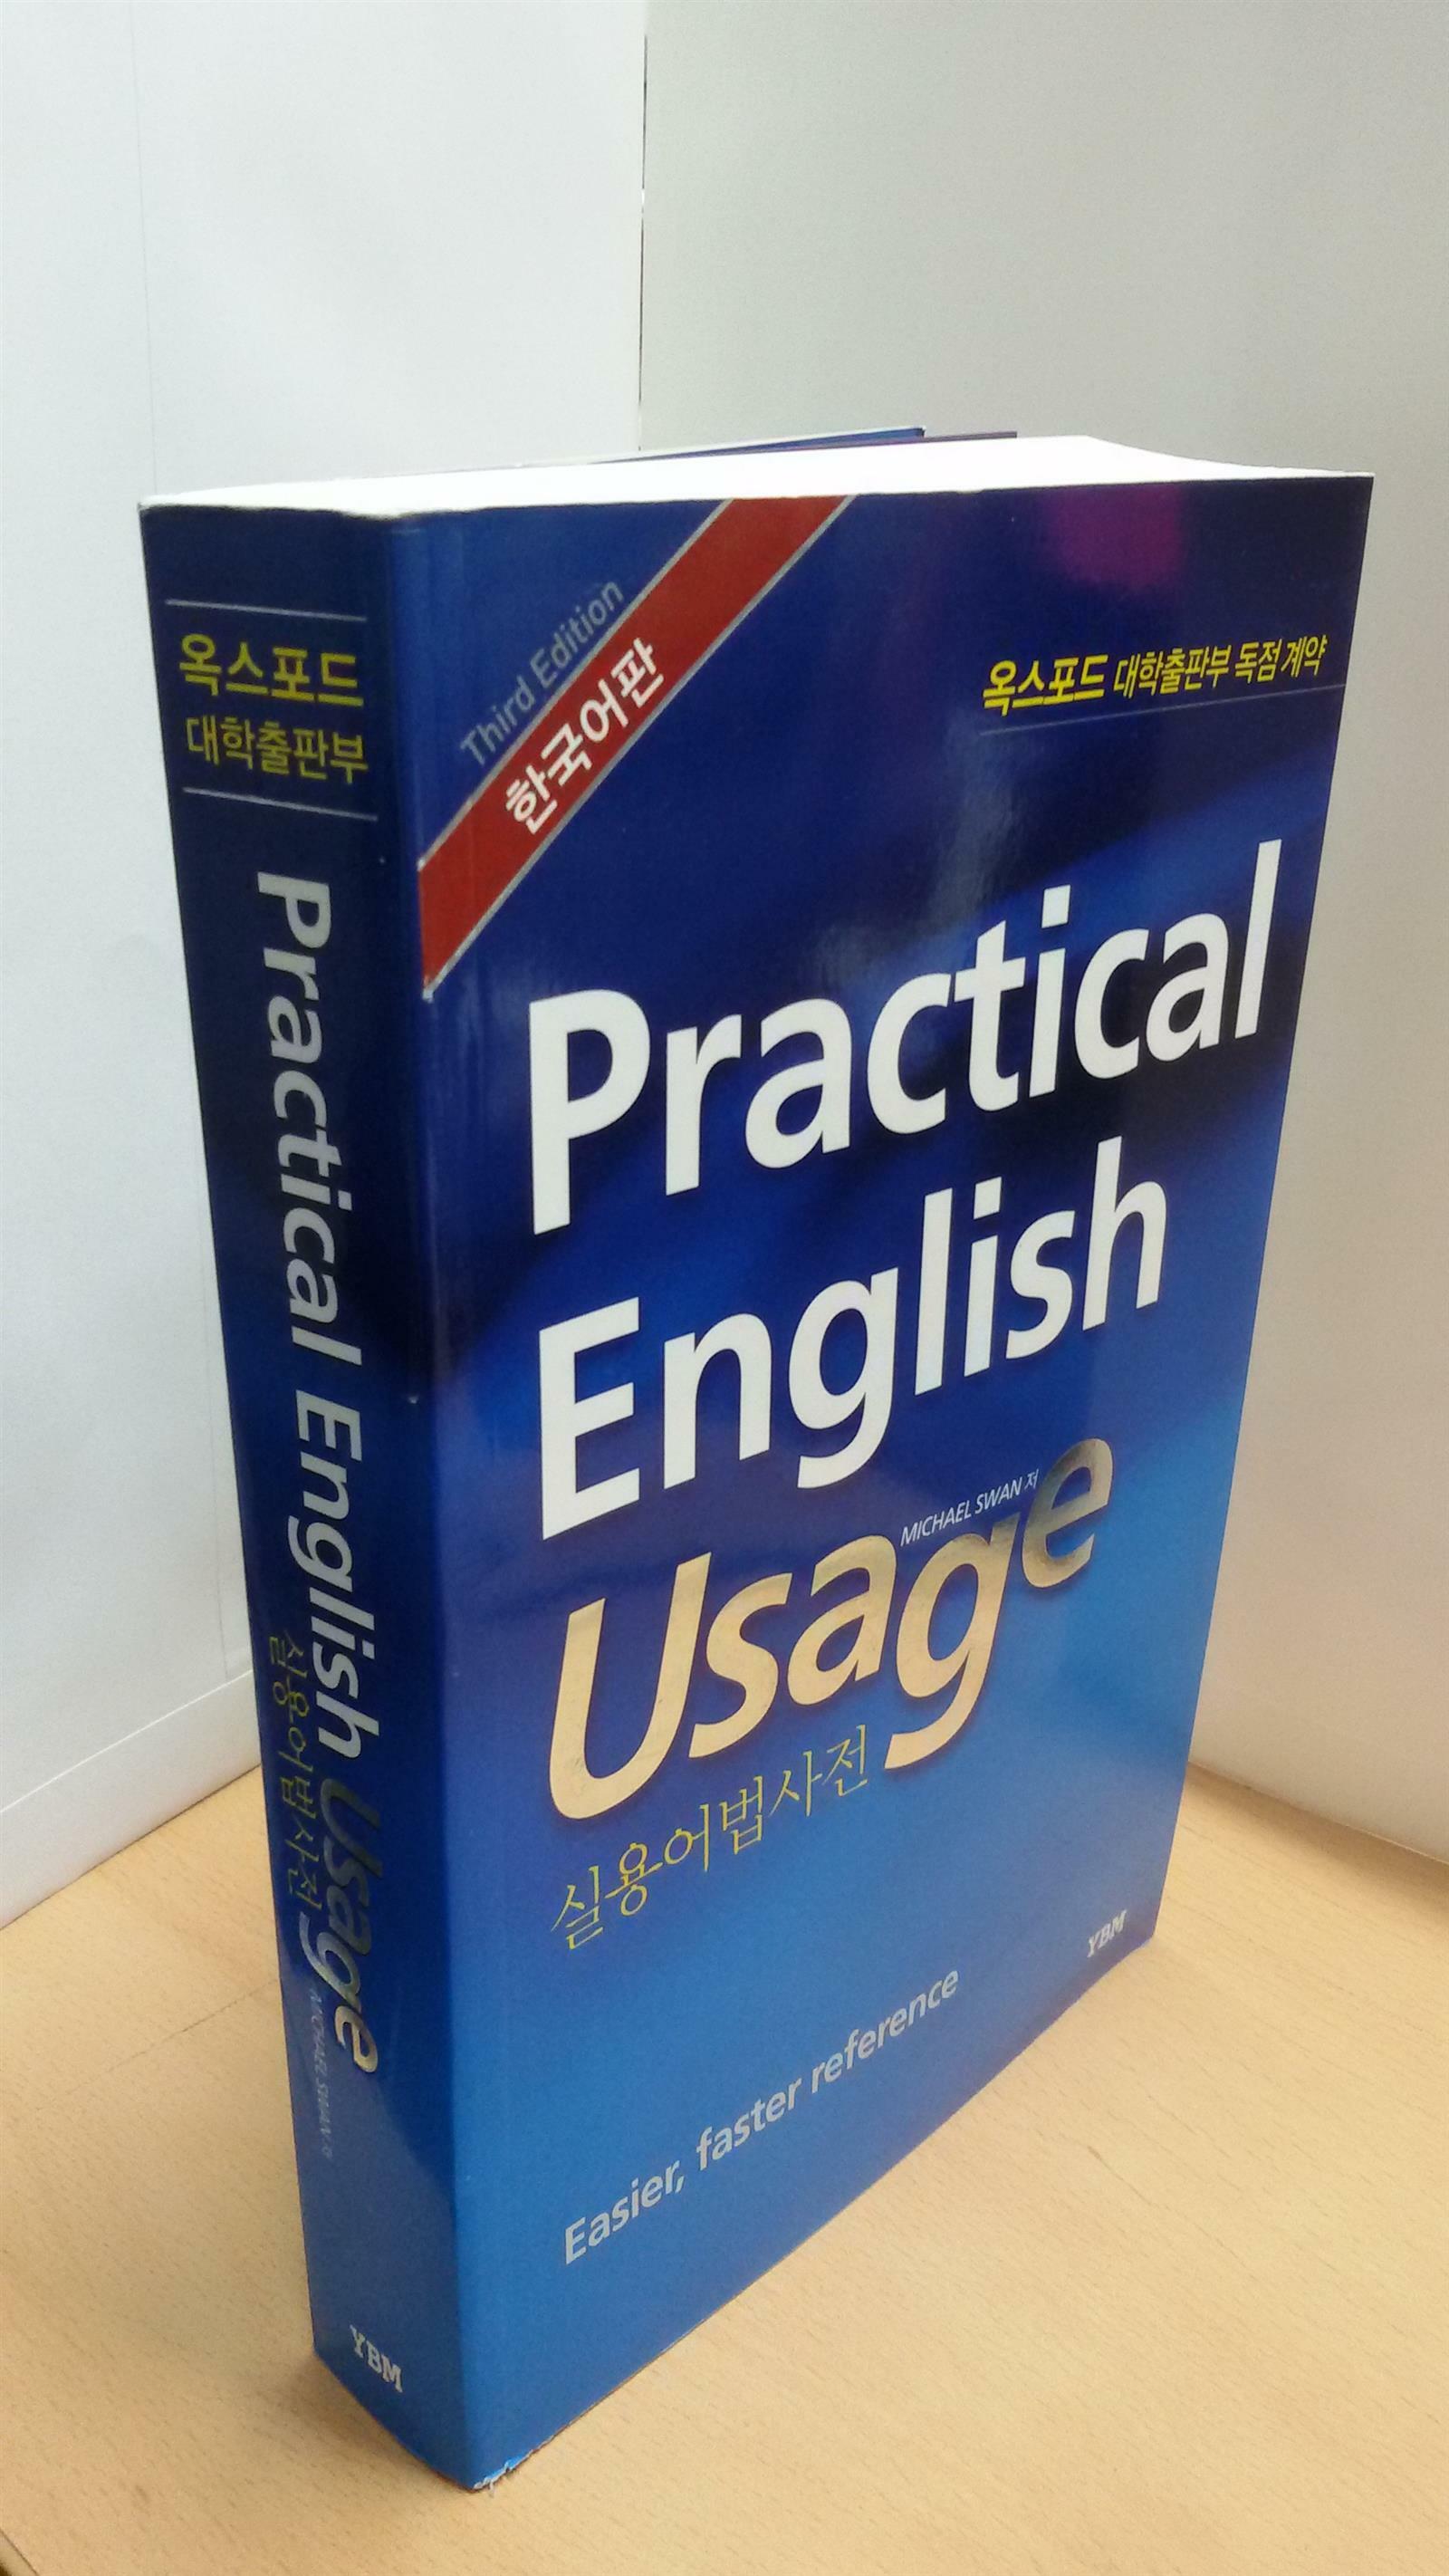 [중고] 옥스포드 Practical English Usage 실용어법사전 (한국어판)